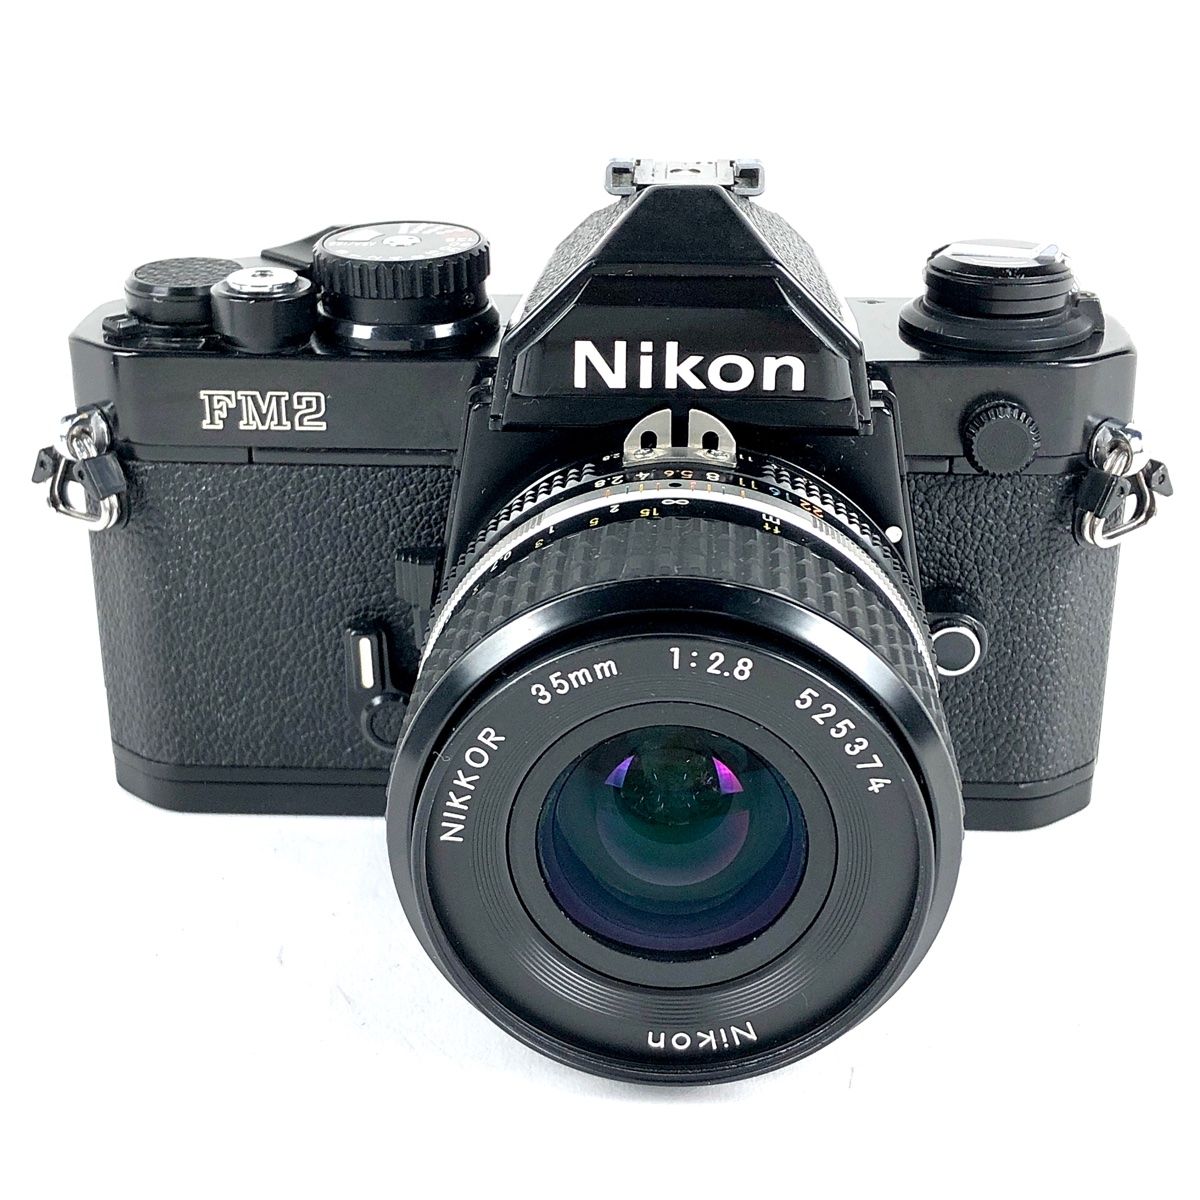 ニコン Nikon NEW FM2 ブラック + Ai-S NIKKOR 35mm F2.8 フィルム マニュアルフォーカス 一眼レフカメラ 【中古】